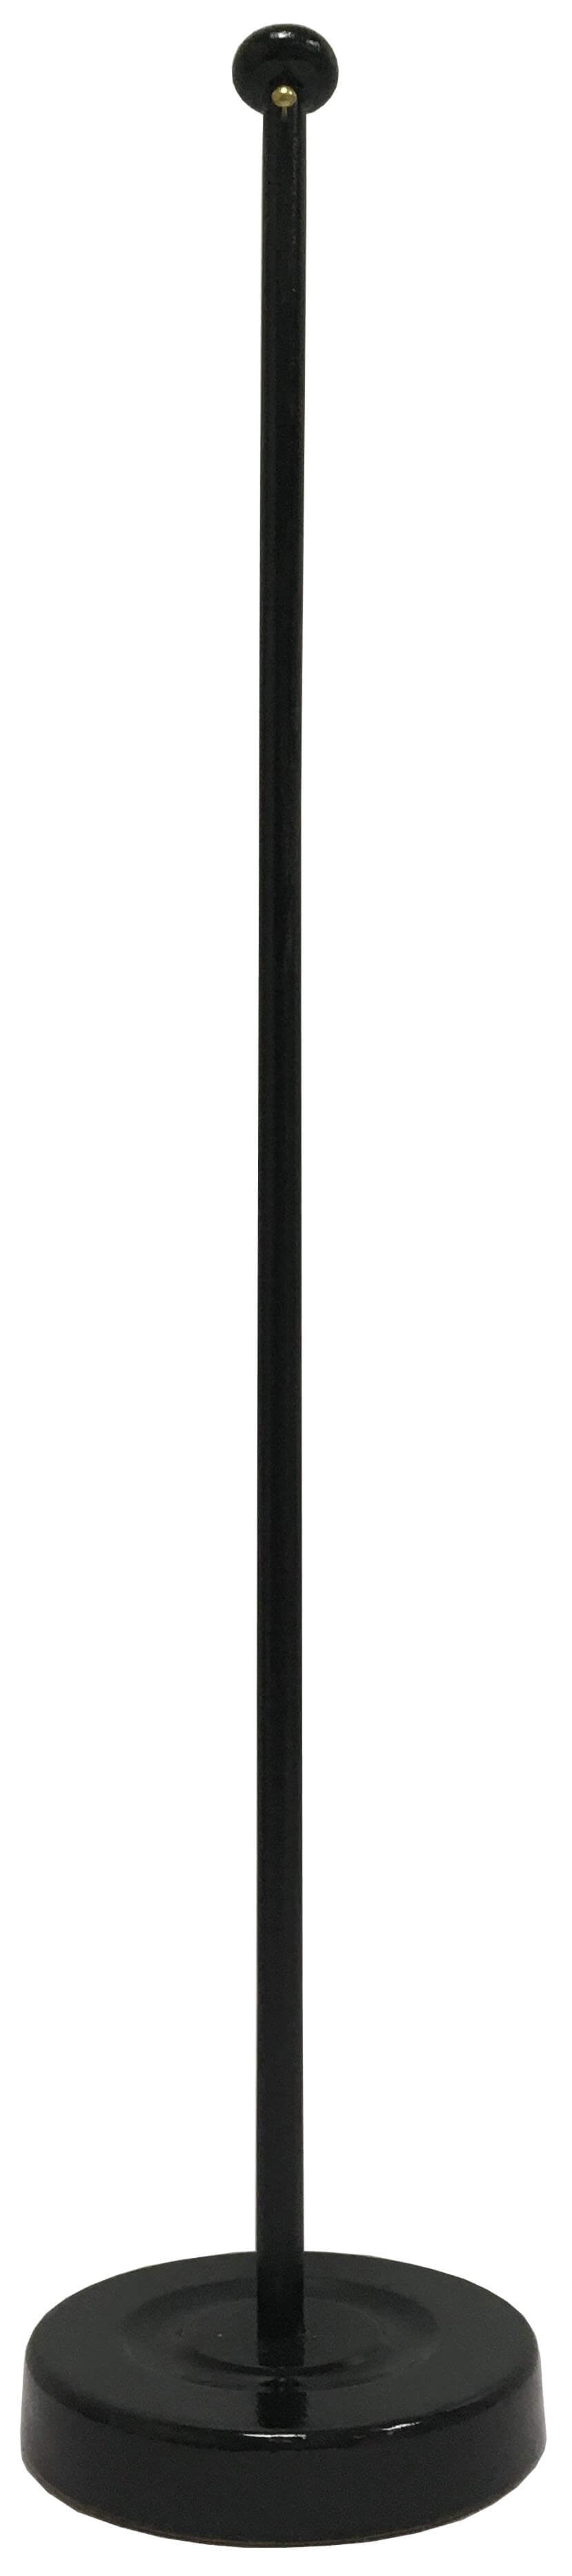 Wimpel Ständer Holz in der Farbe schwarz